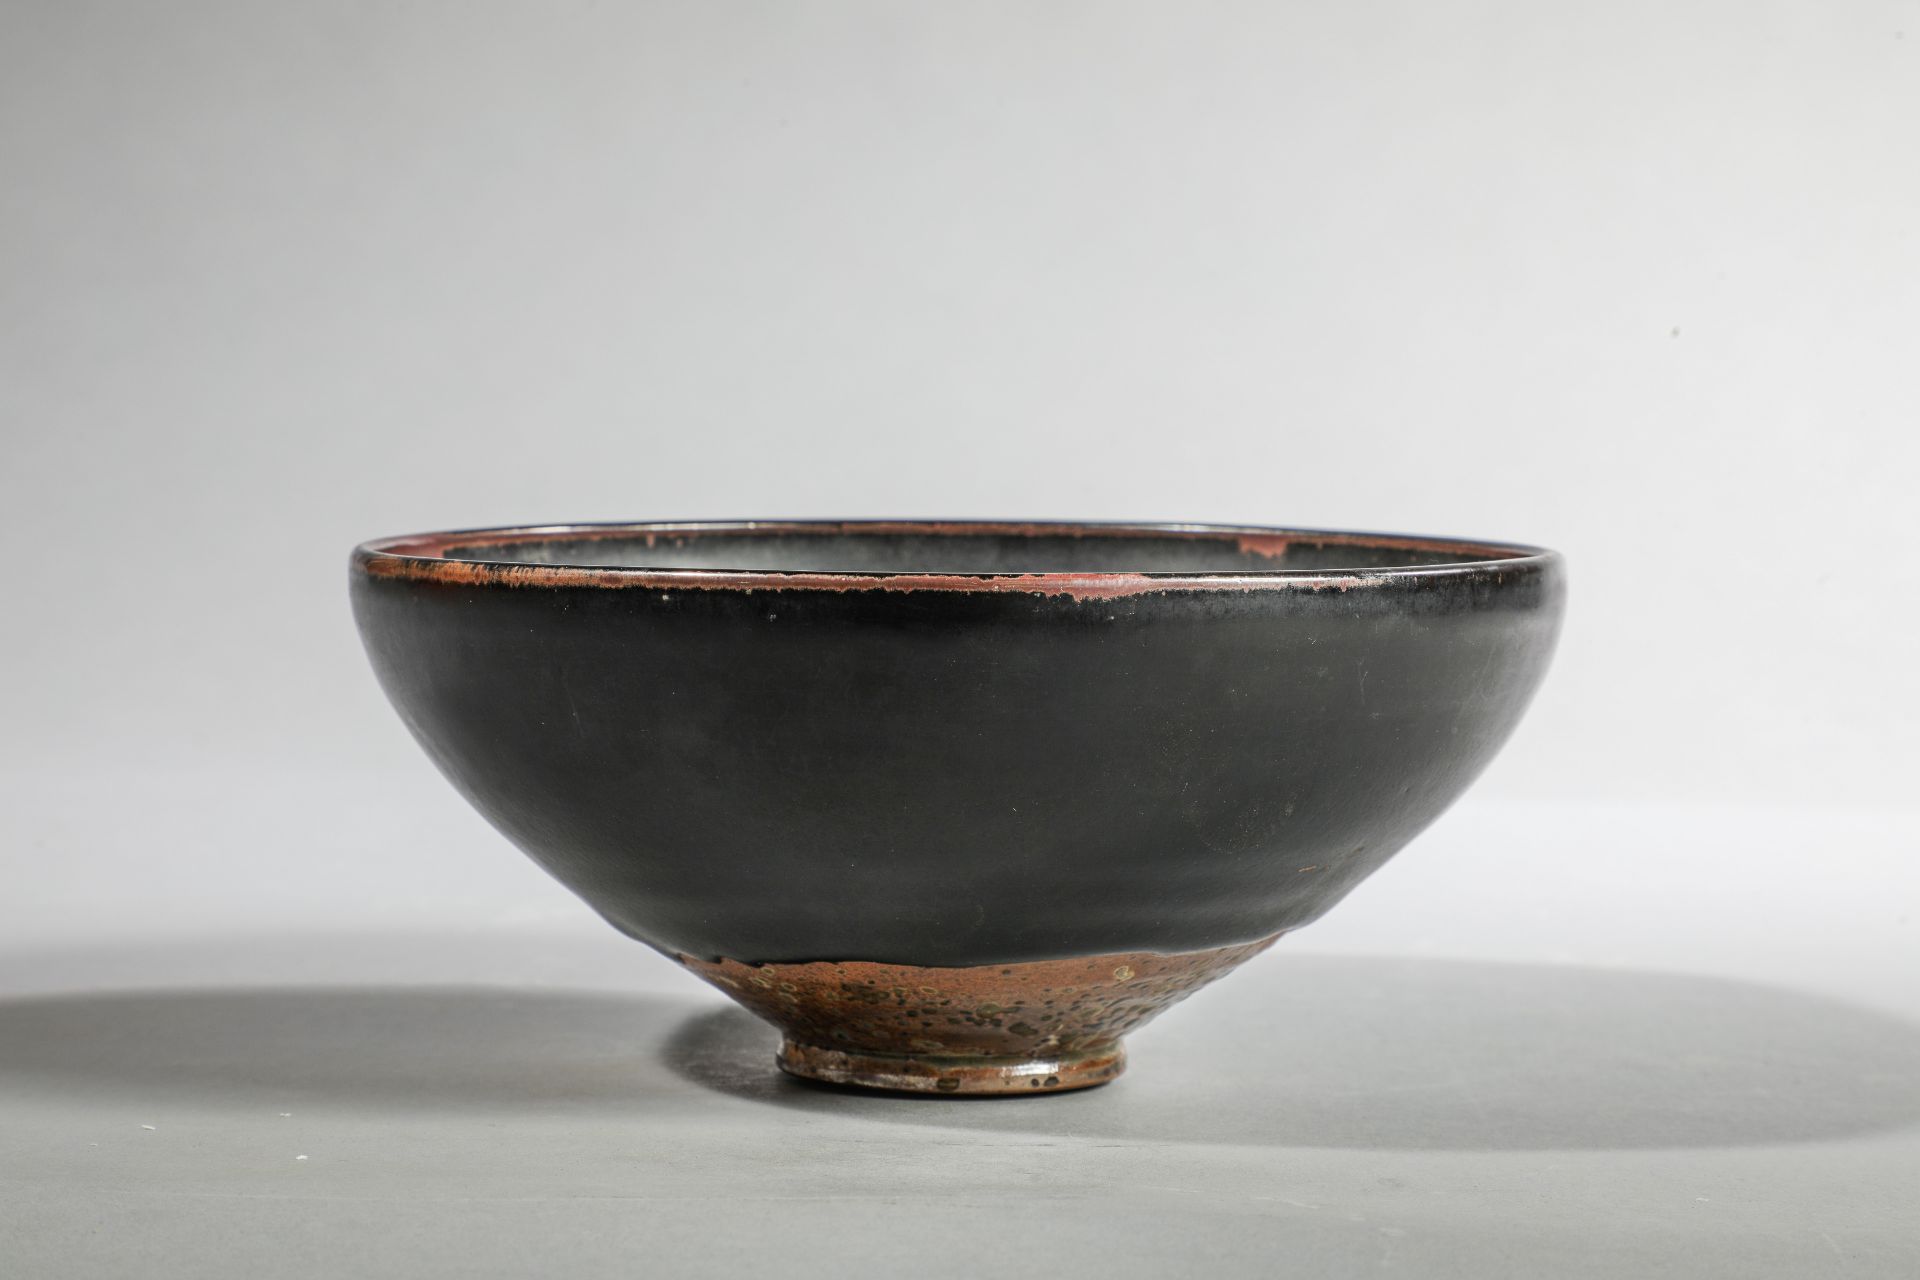 Coupe de forme lianzi sur pied en couronne en fin grès porcelaineux à glaçure monochrome noire ornée - Image 4 of 6